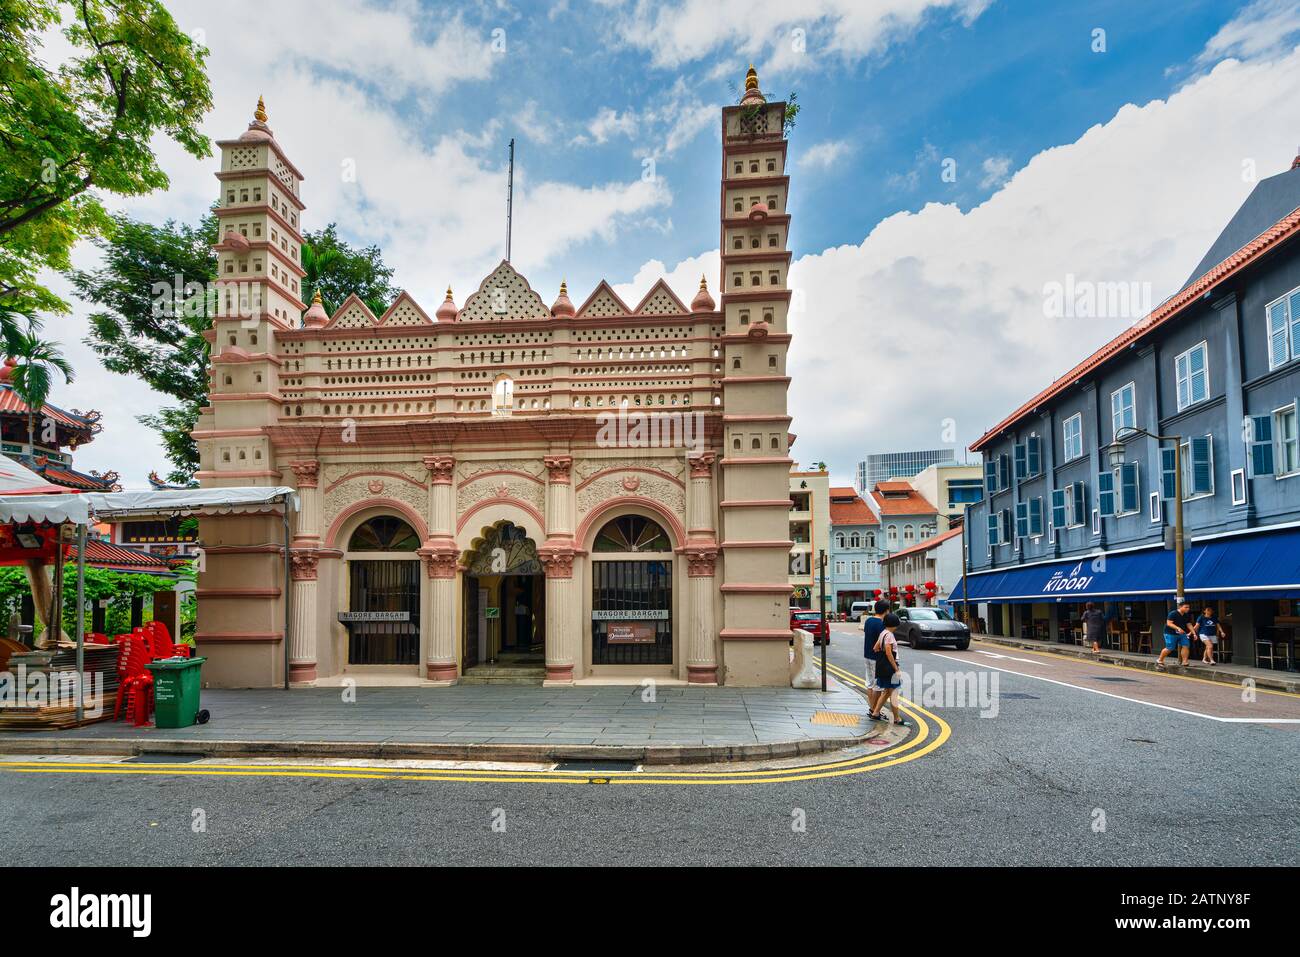 Singapour. Janvier 2020. Le Nagore Durgha (ou Nagore Dargah) est un sanctuaire à Singapour construit par des musulmans du sud de l'Inde entre 1828 et 1830. Banque D'Images